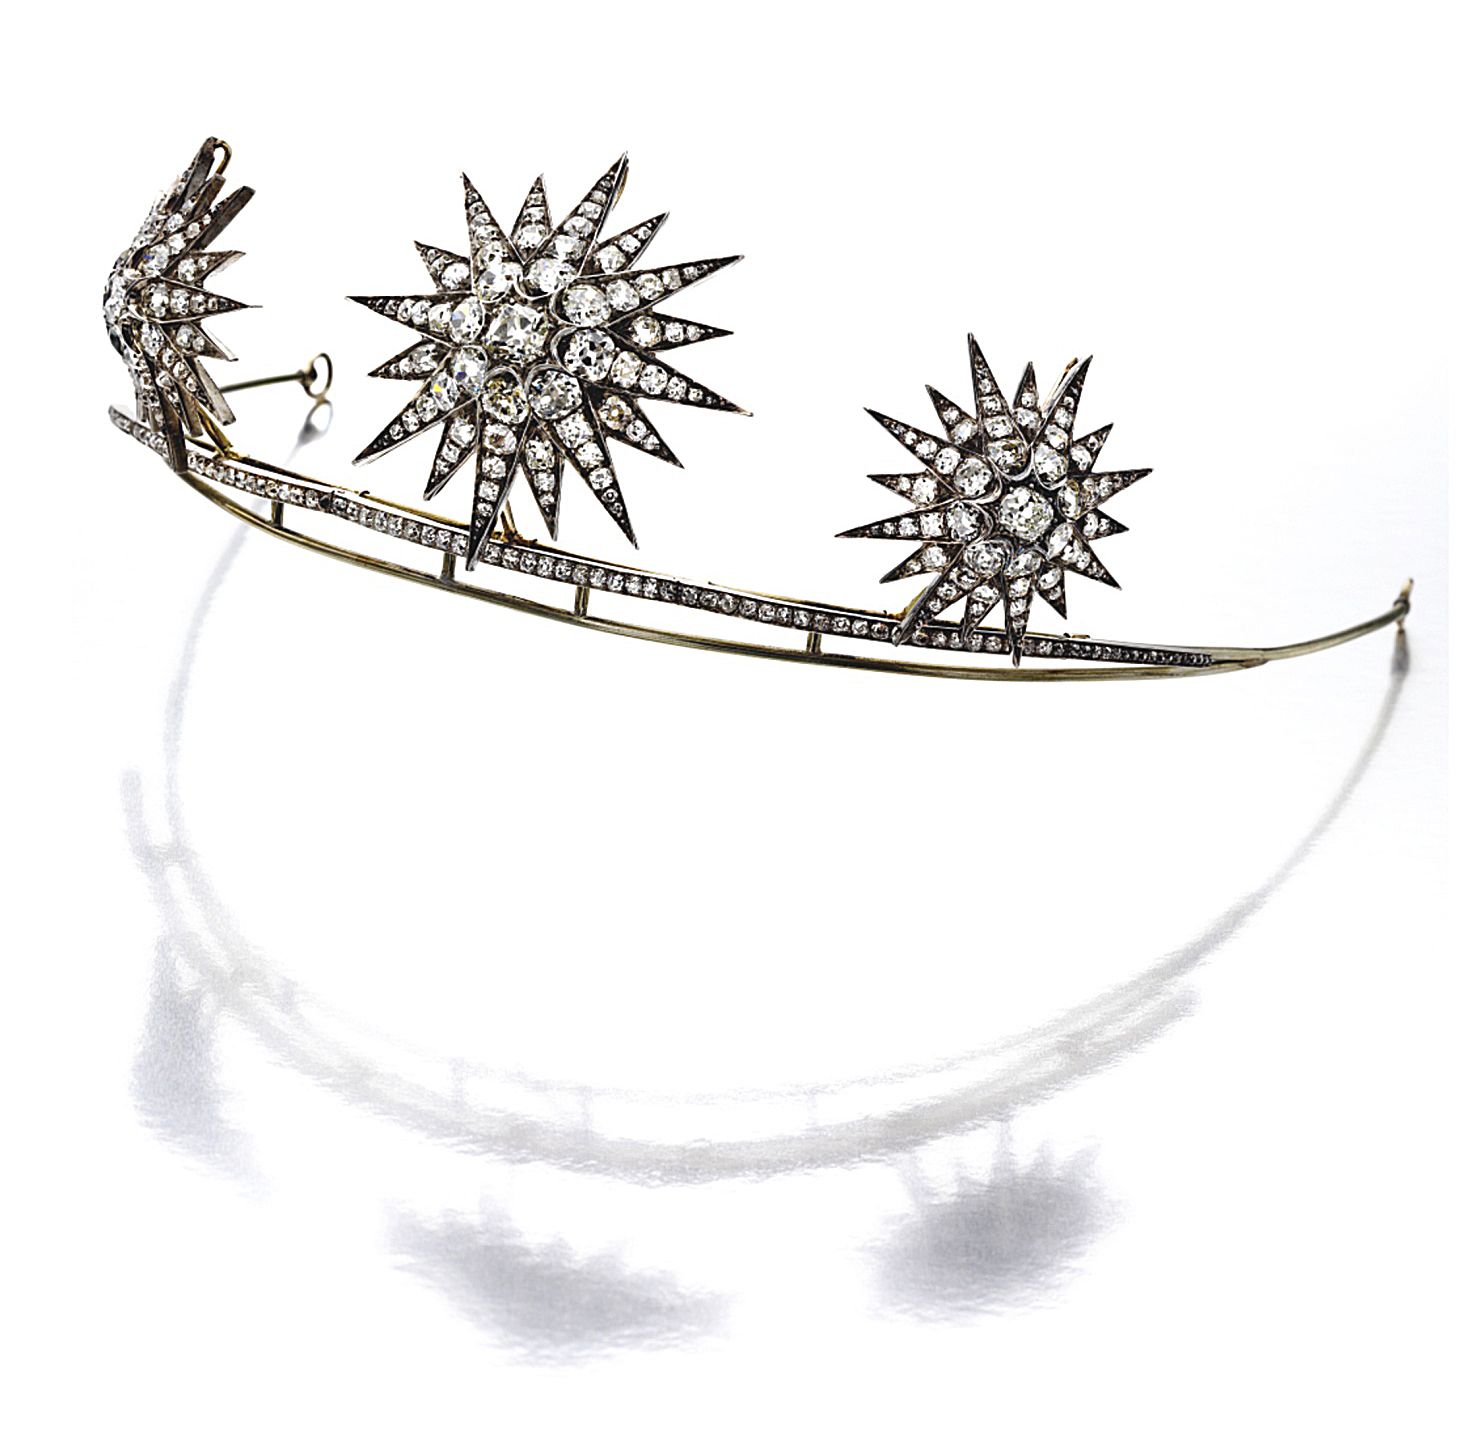 Starburst tiara, diamond, jewelry